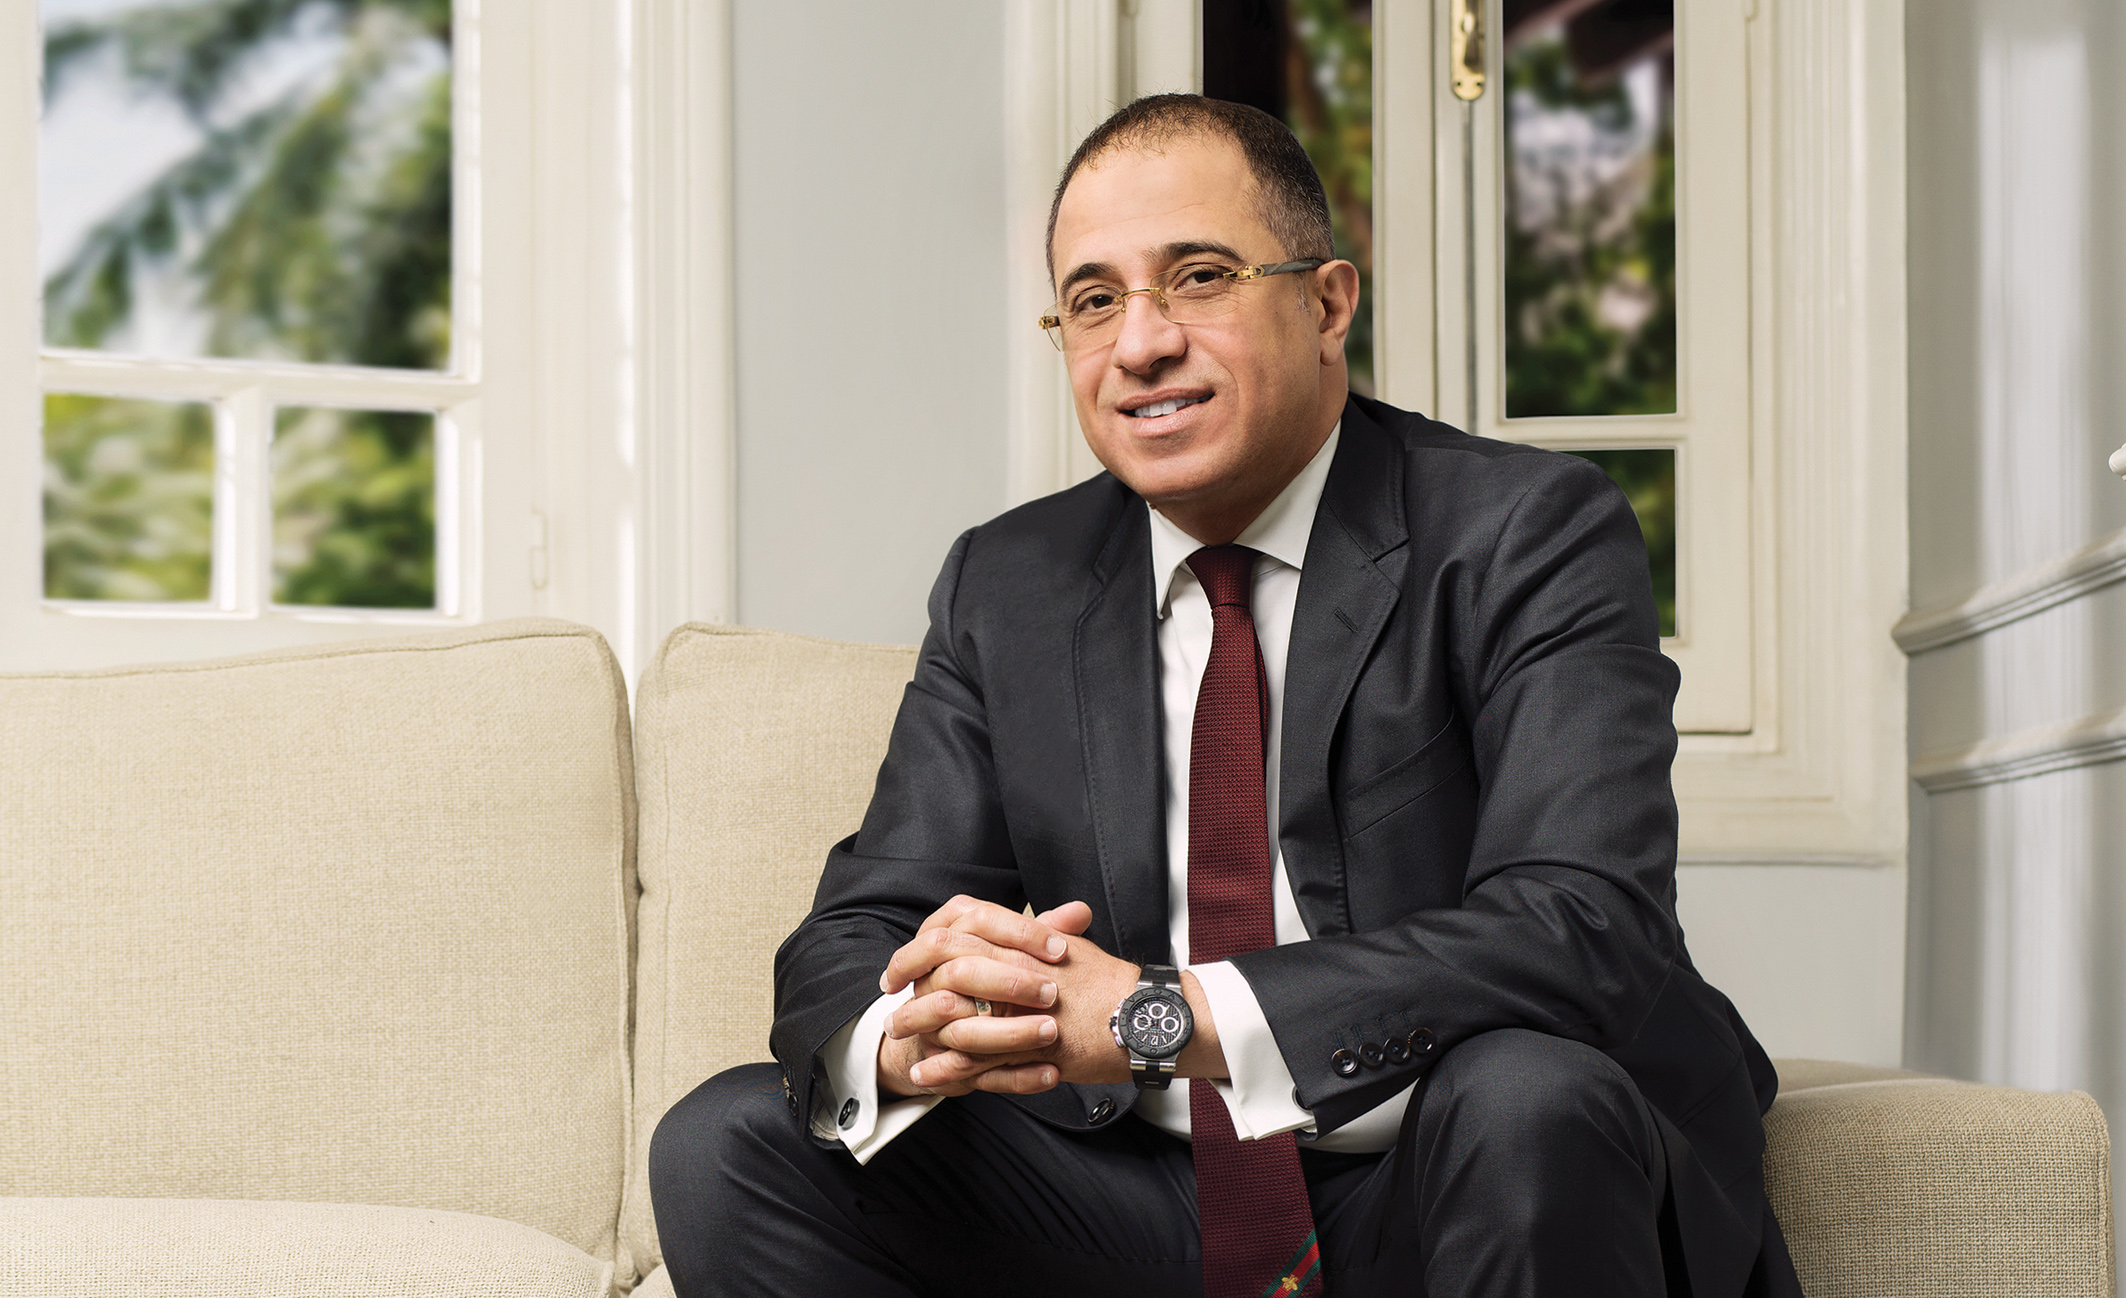 د. أحمد شلبي، الرئيس التنفيذي والعضو المنتدب لشركة Tatweer Misr